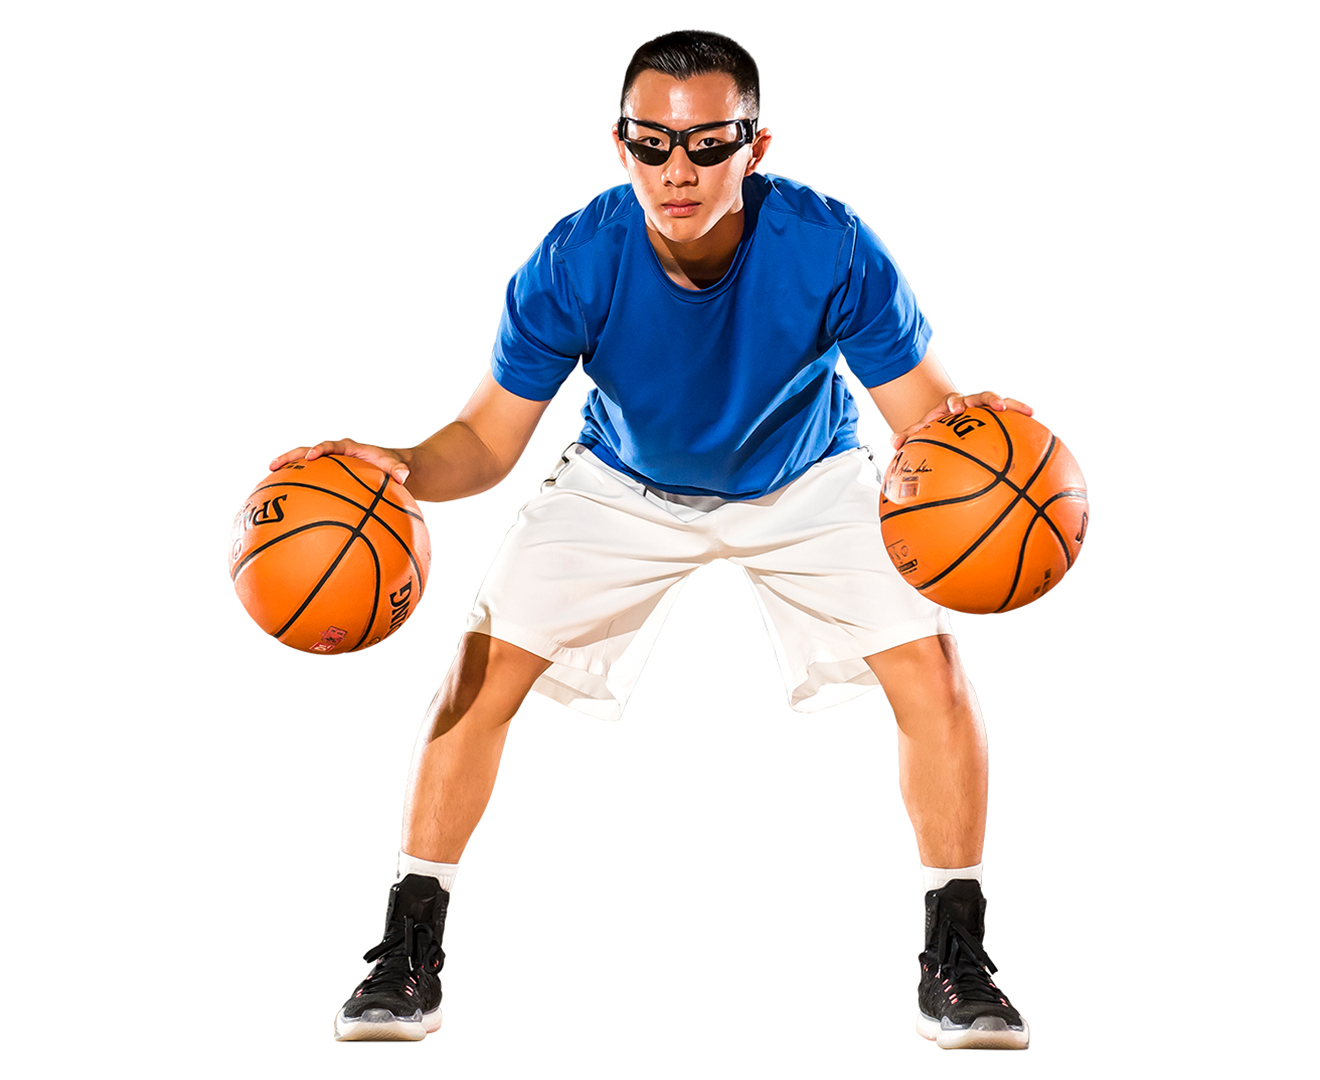 Баскетбольная игра очко. Дриблинг в баскетболе. Баскетбольный мяч для дриблинга. Очки для дриблинга баскетбол. Баскетболист в очках.